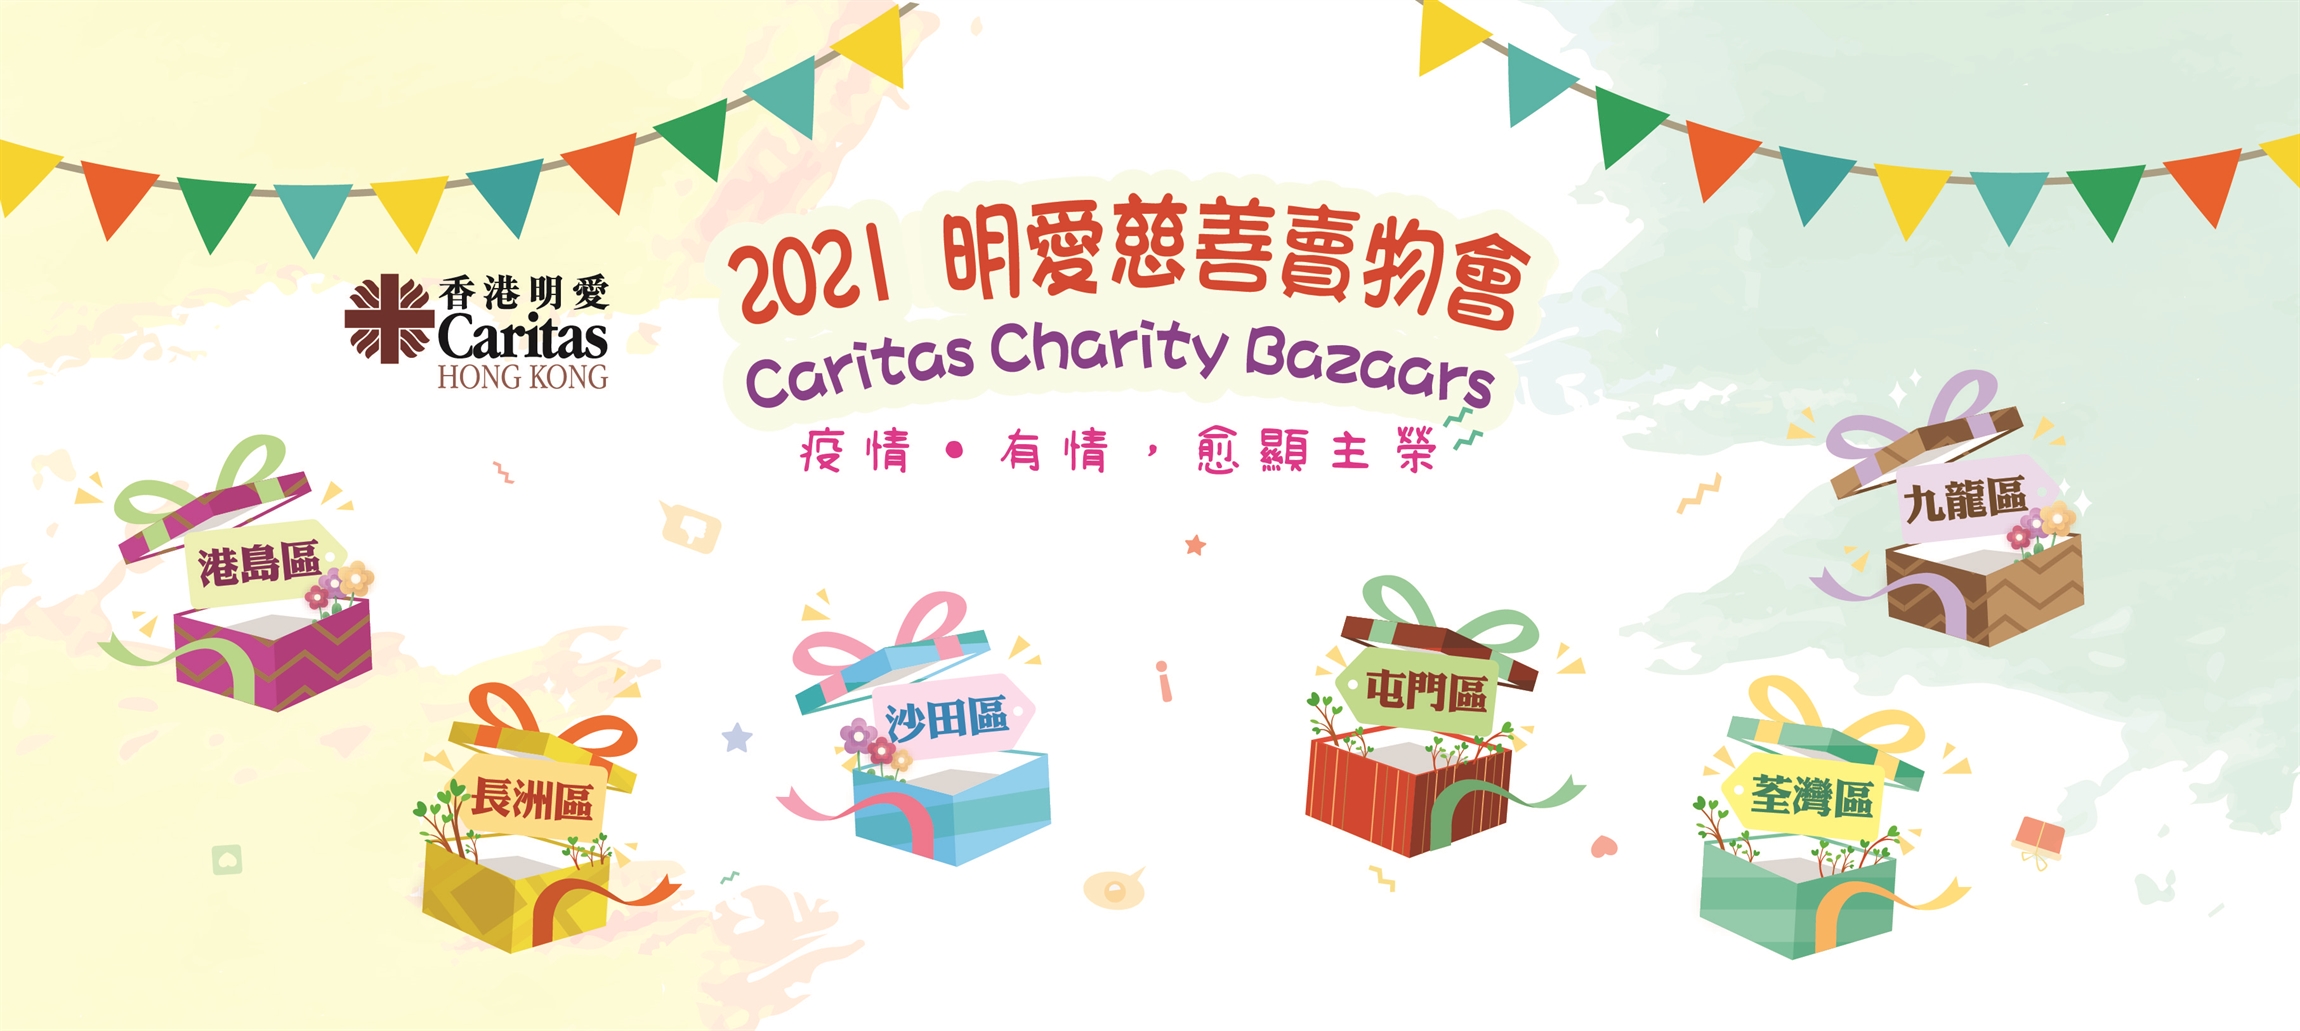 Self Photos / Files - 2021 Caritas Charity Bazaars